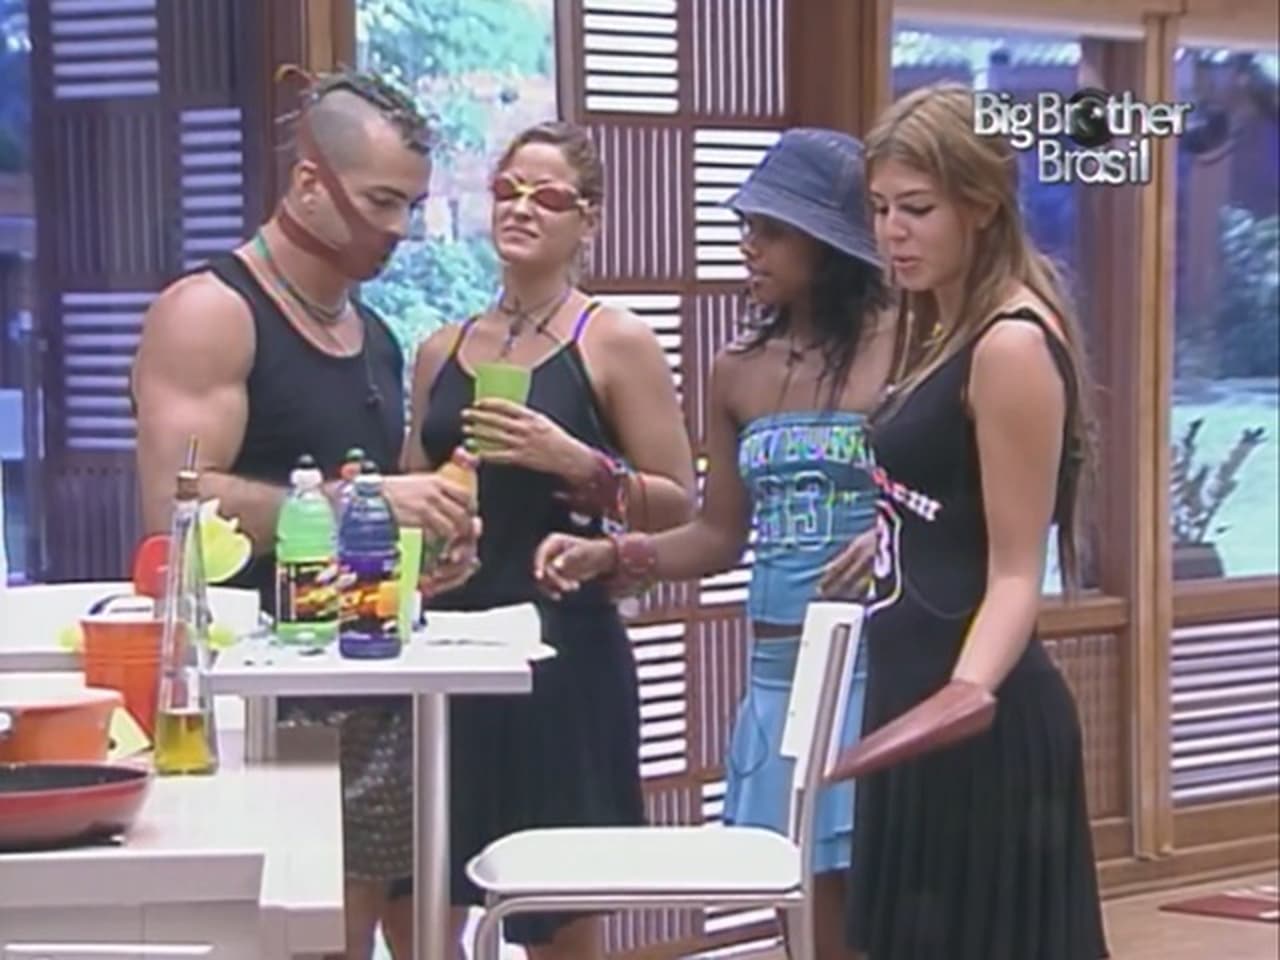 Big Brother Brasil - Season 4 Episode 48 : Episode 48